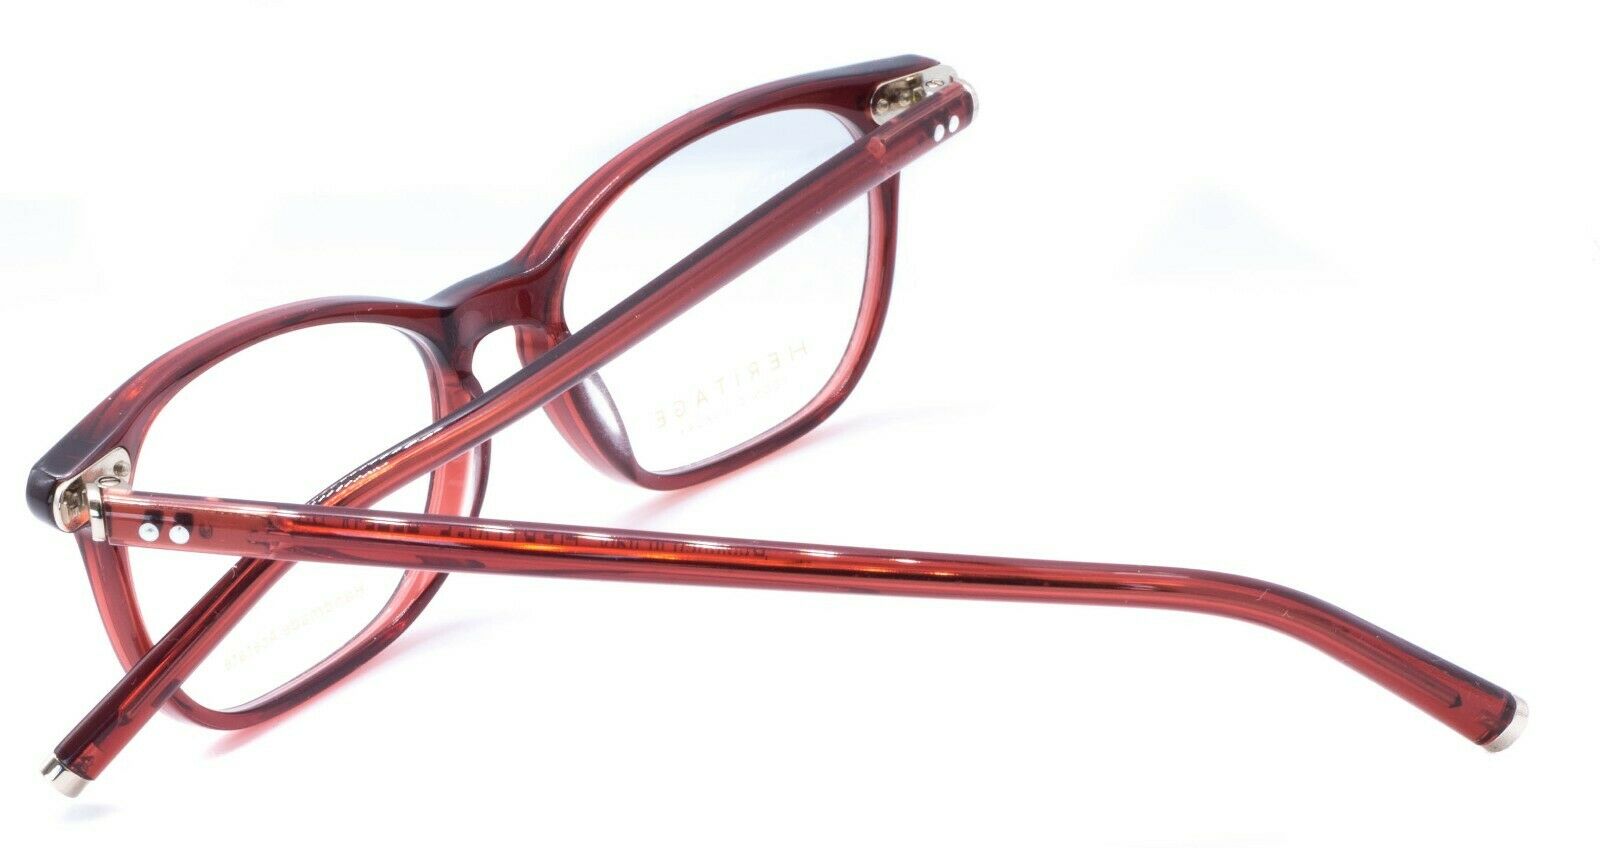 HERITAGE Iconic Luxury HEHF14 RR Eyewear FRAMES Eyeglasses RX Optical Glasses